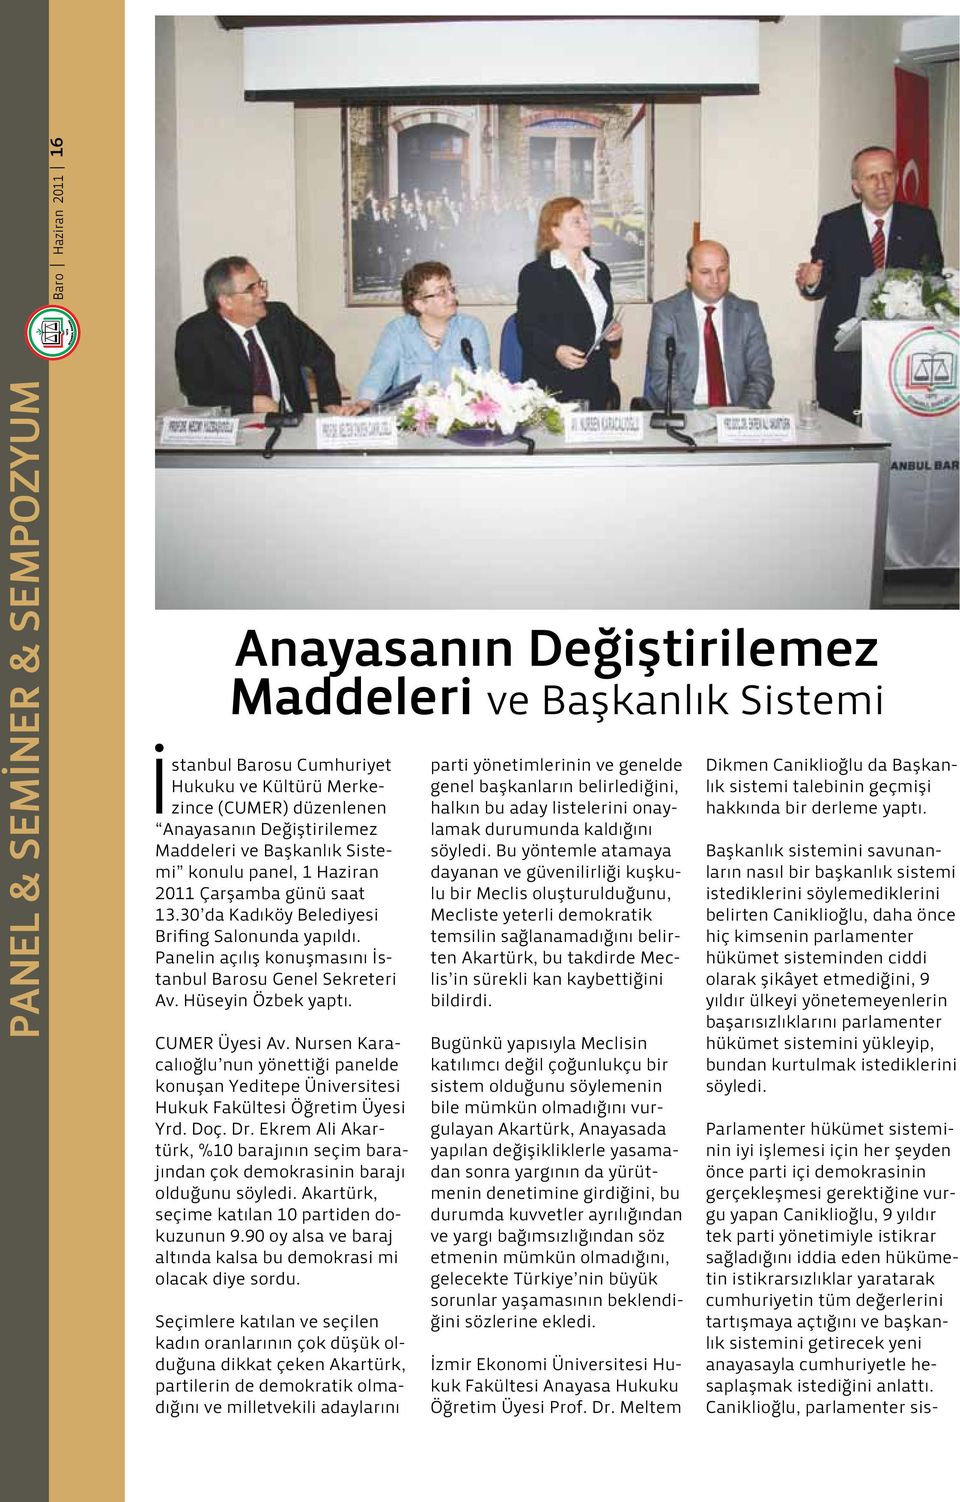 Panelin açılış konuşmasını İstanbul Barosu Genel Sekreteri Av. Hüseyin Özbek yaptı. CUMER Üyesi Av.